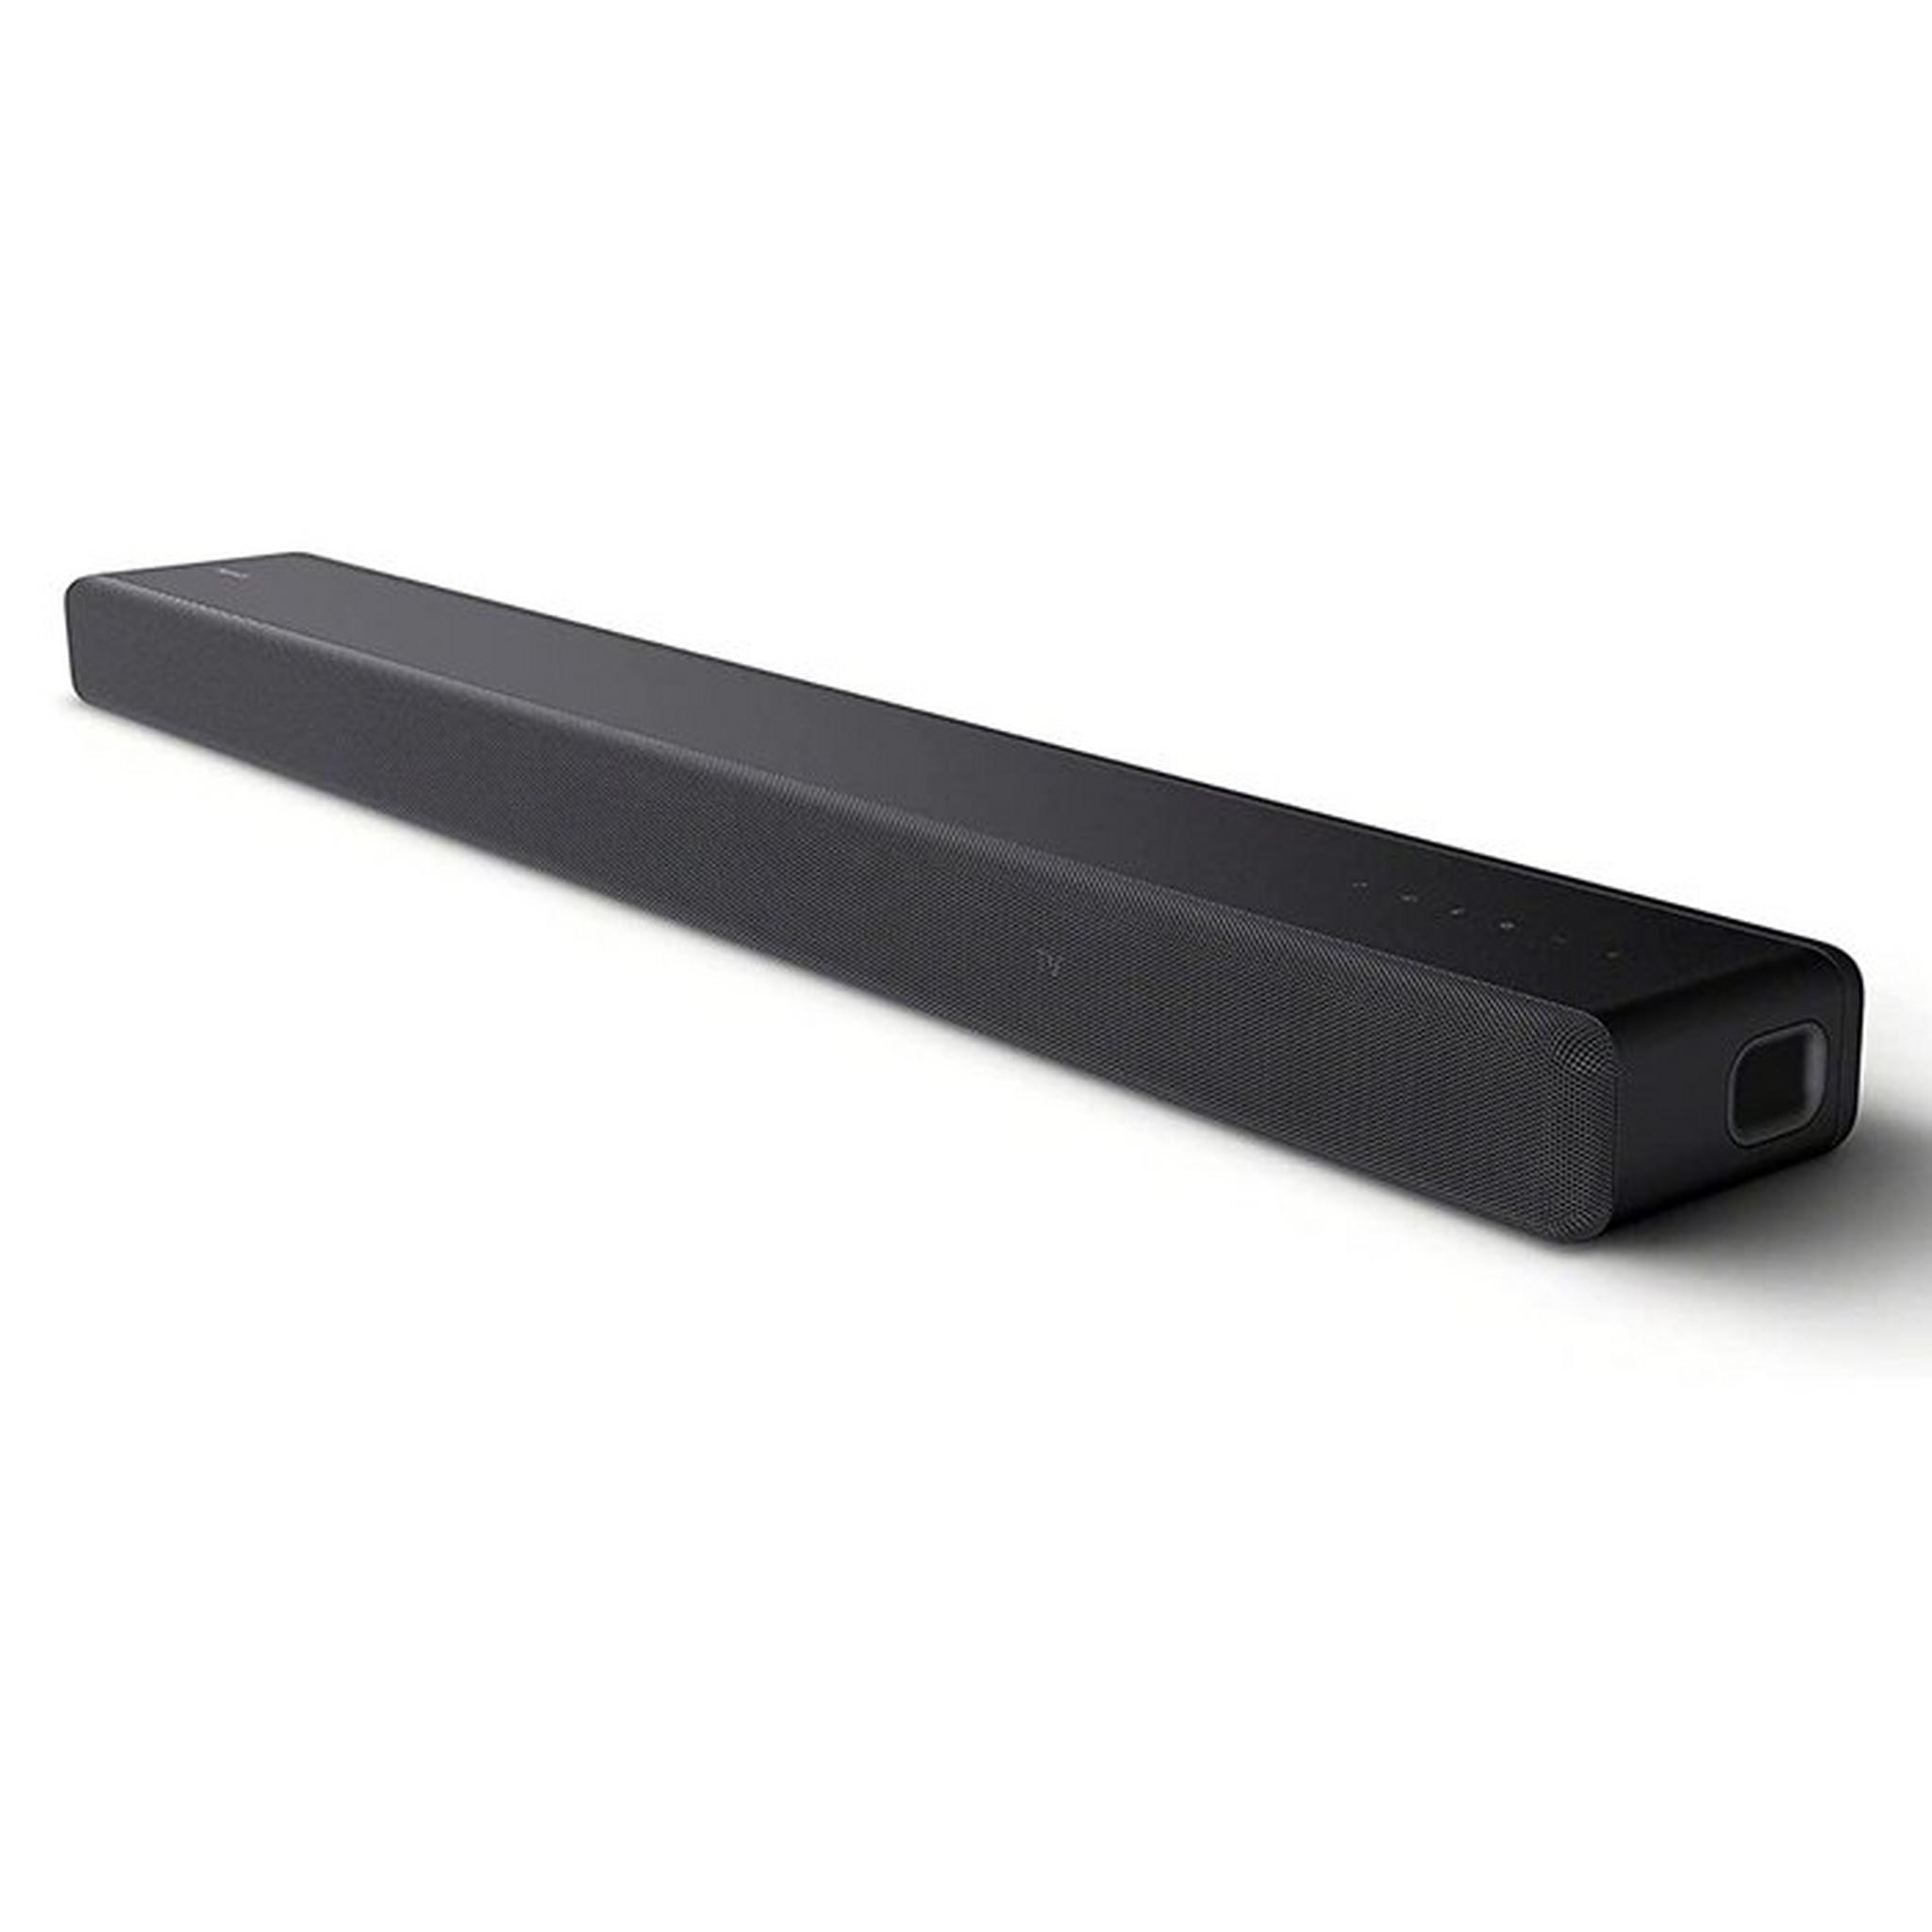 Sony 360 Dolby Atmos Sound Bar, 250W, 3.1ch, HT-A3000//C AF1 - Black